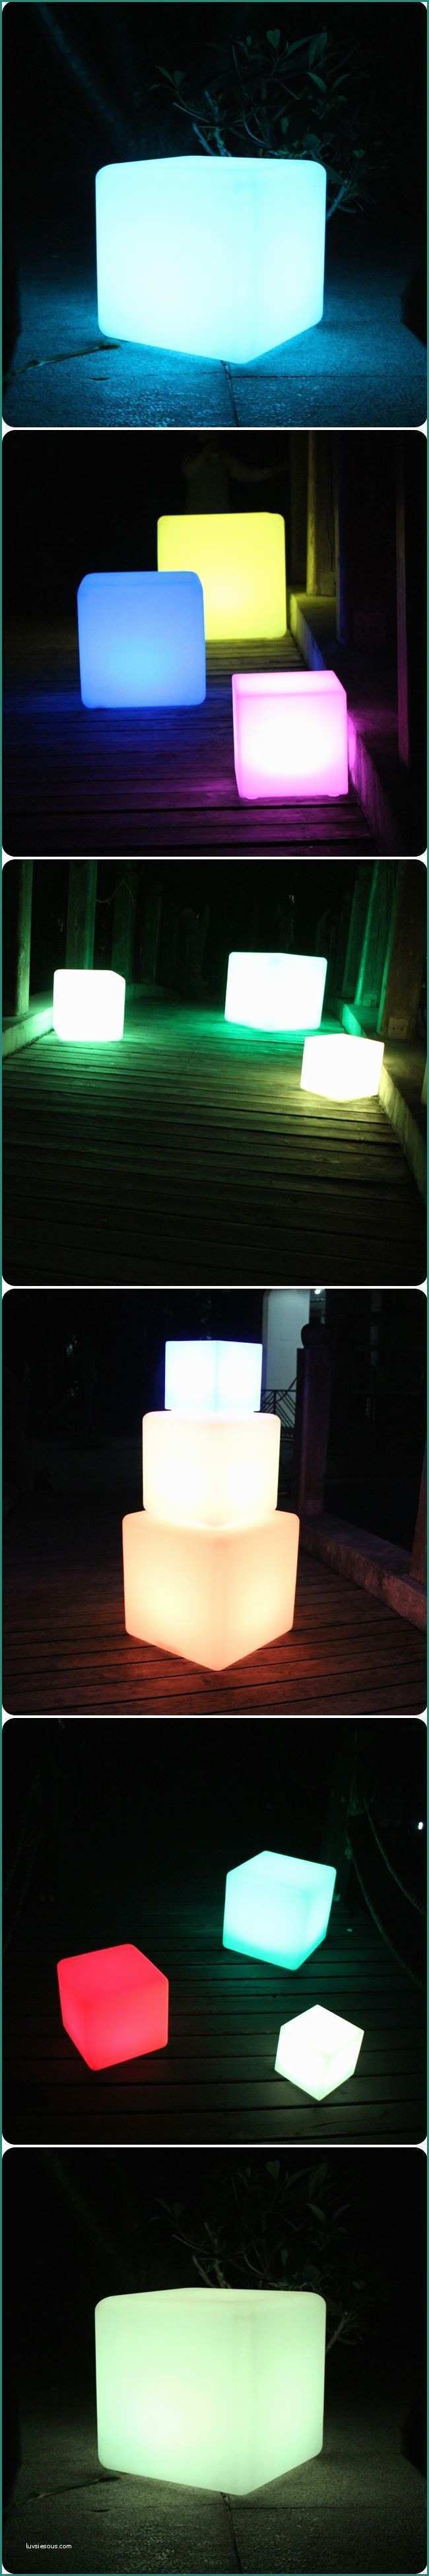 Lampade Design Outlet E Unique Ampoule Led Decorative